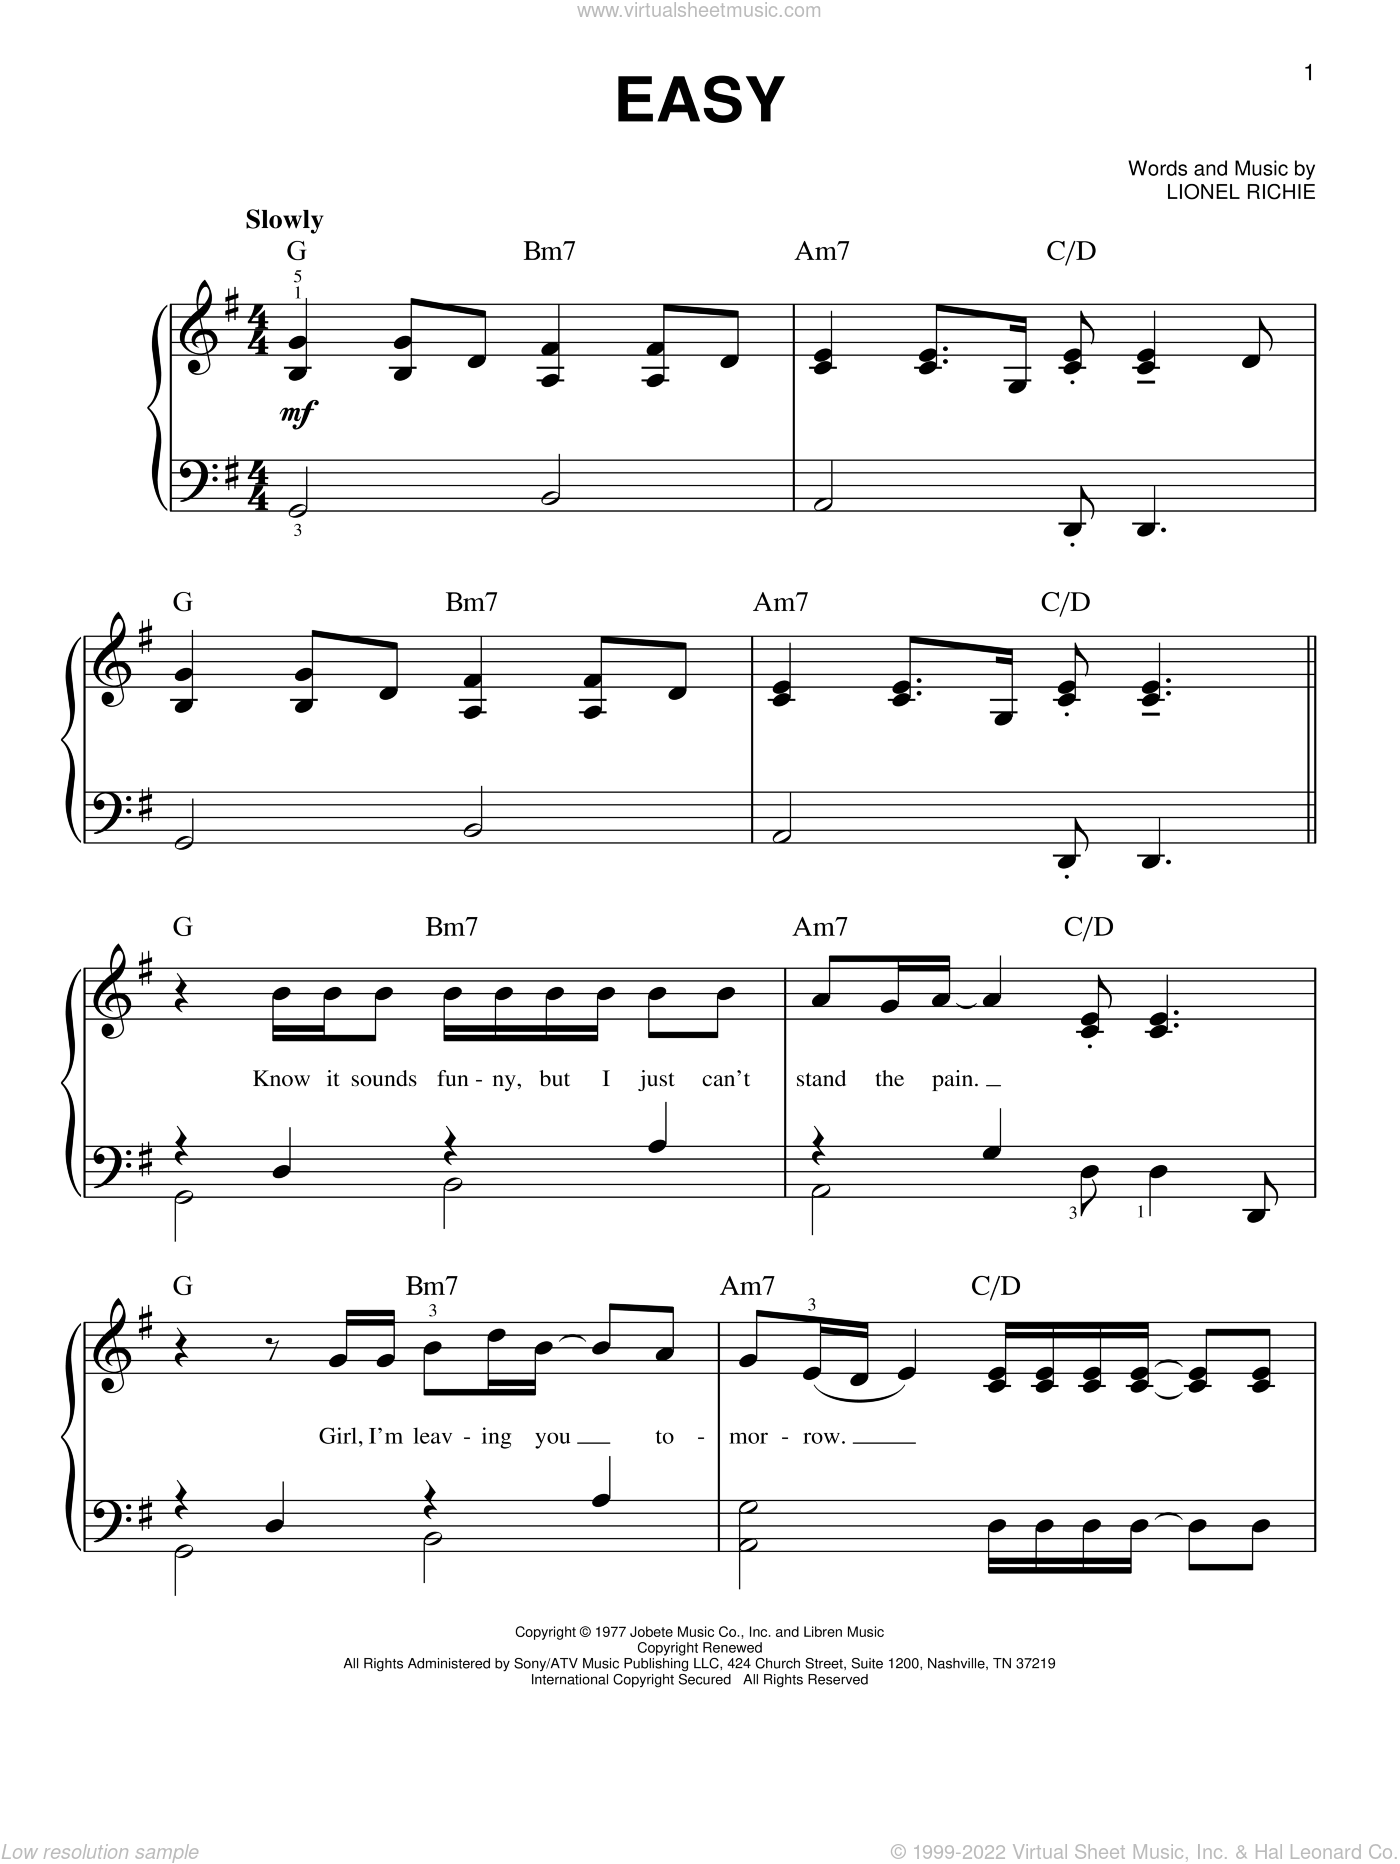 Notação musical tradicional: transcrição de notas Sheet music for Piano  (Solo) Easy